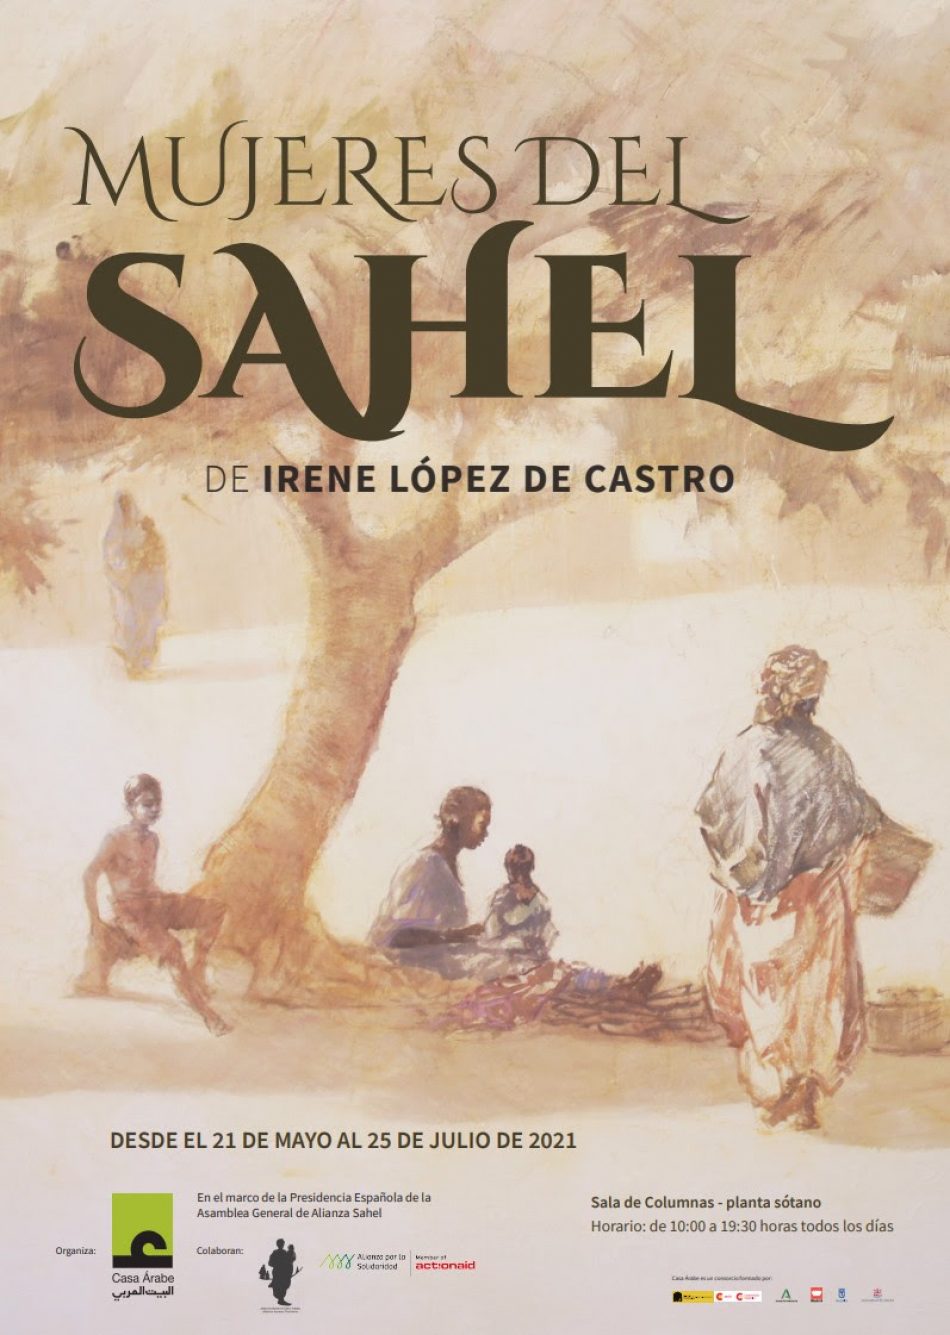 Una exposición en Casa Árabe, dedicada a las “Mujeres del Sahel”